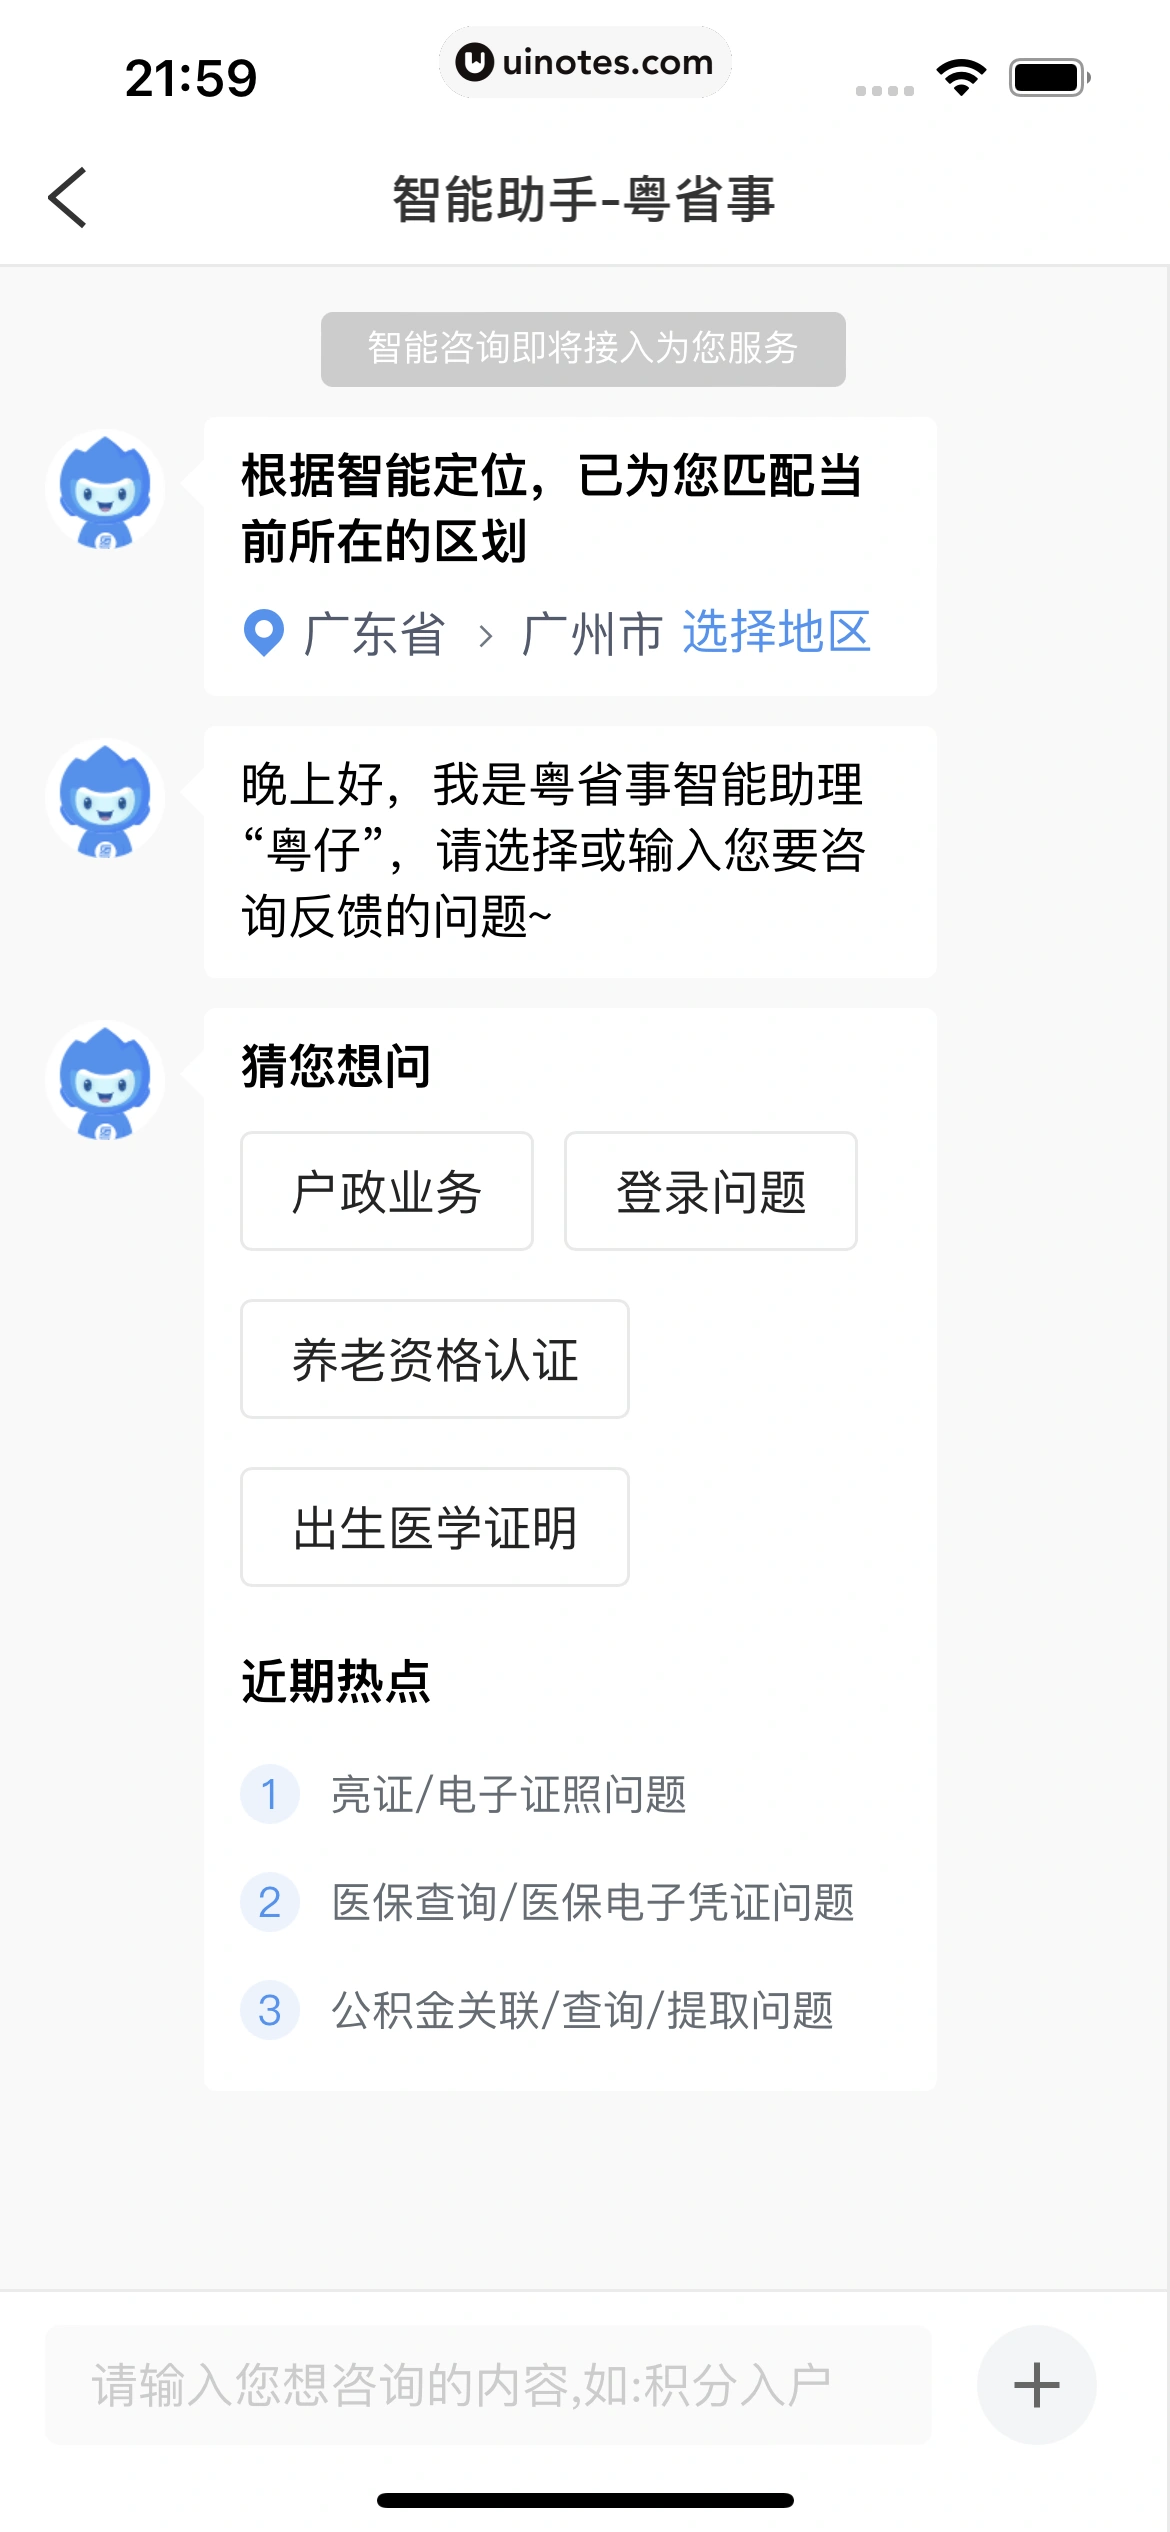 粤省事 App 截图 131 - UI Notes